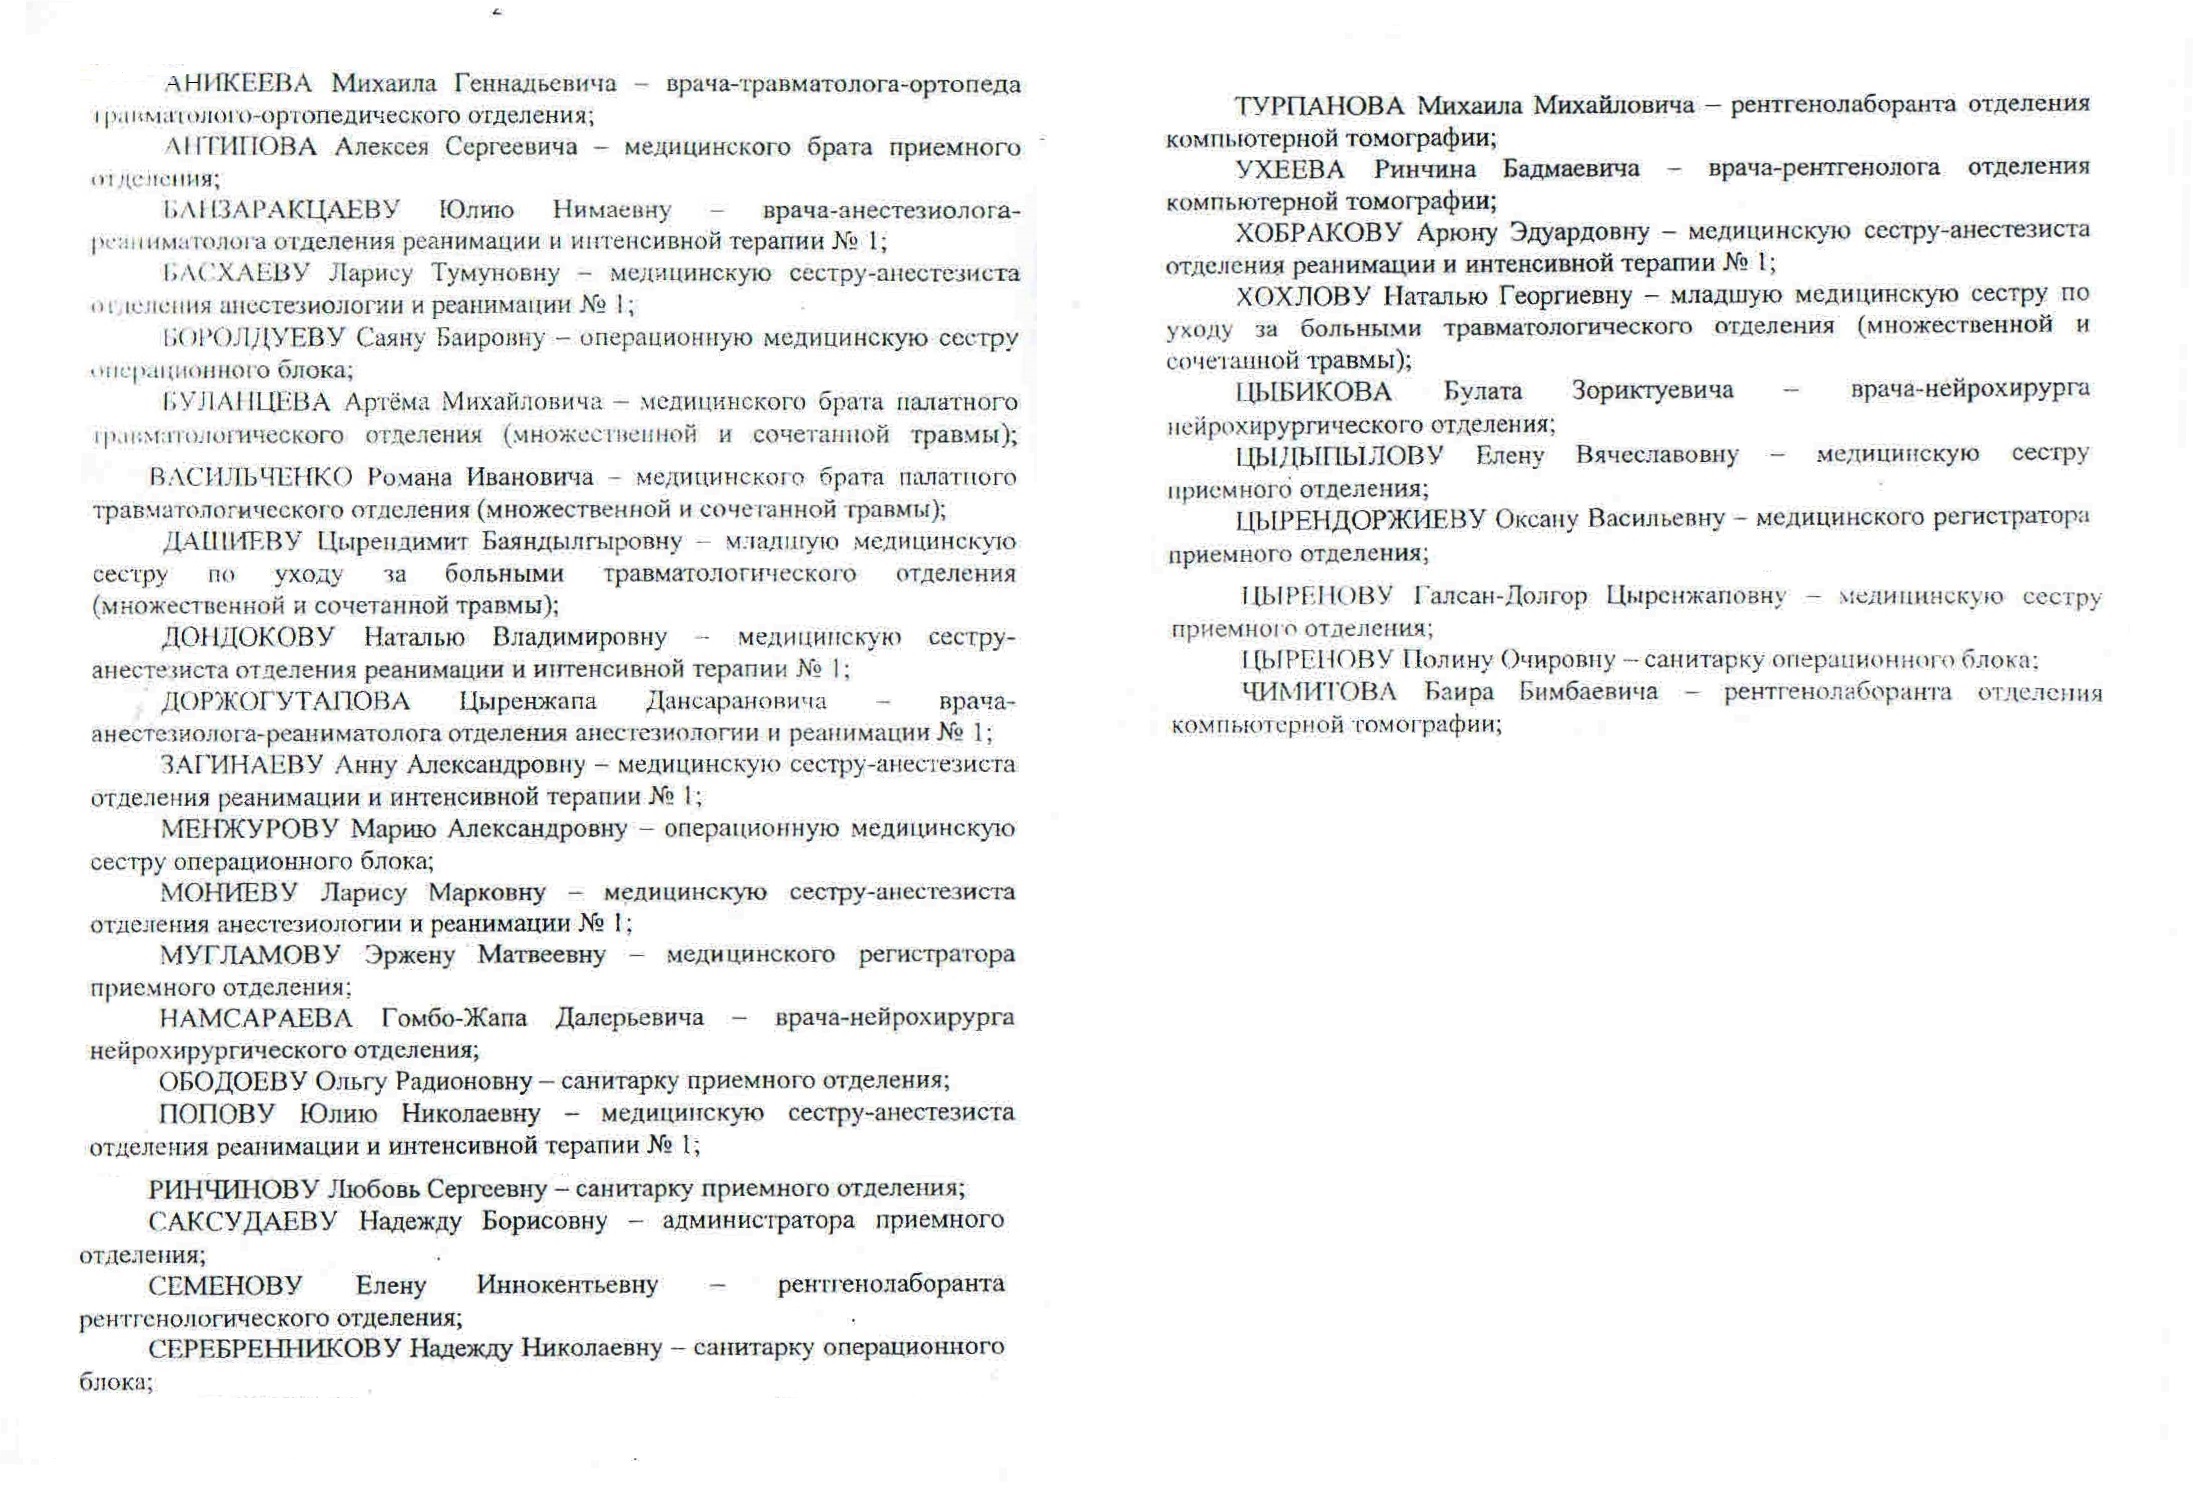 Жданова объявила благодарность врачам из Бурятии за помощь в ДТП с паломниками